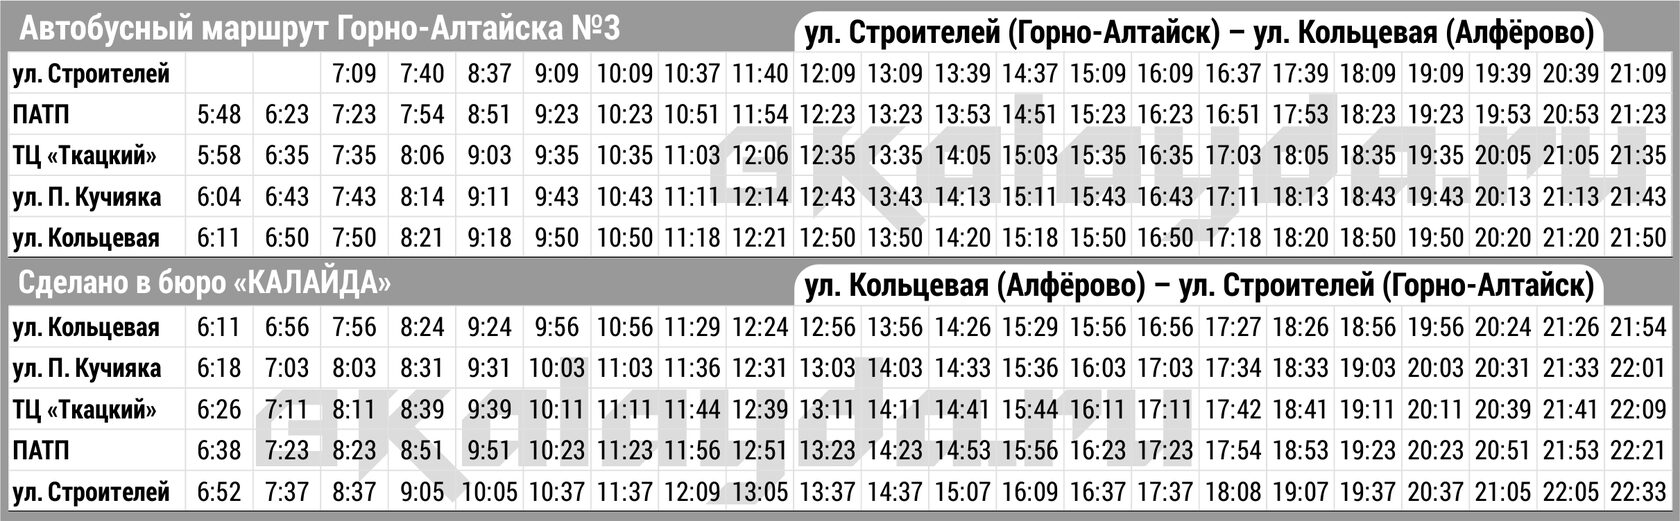 Расписание автобусов столбовая на сегодня